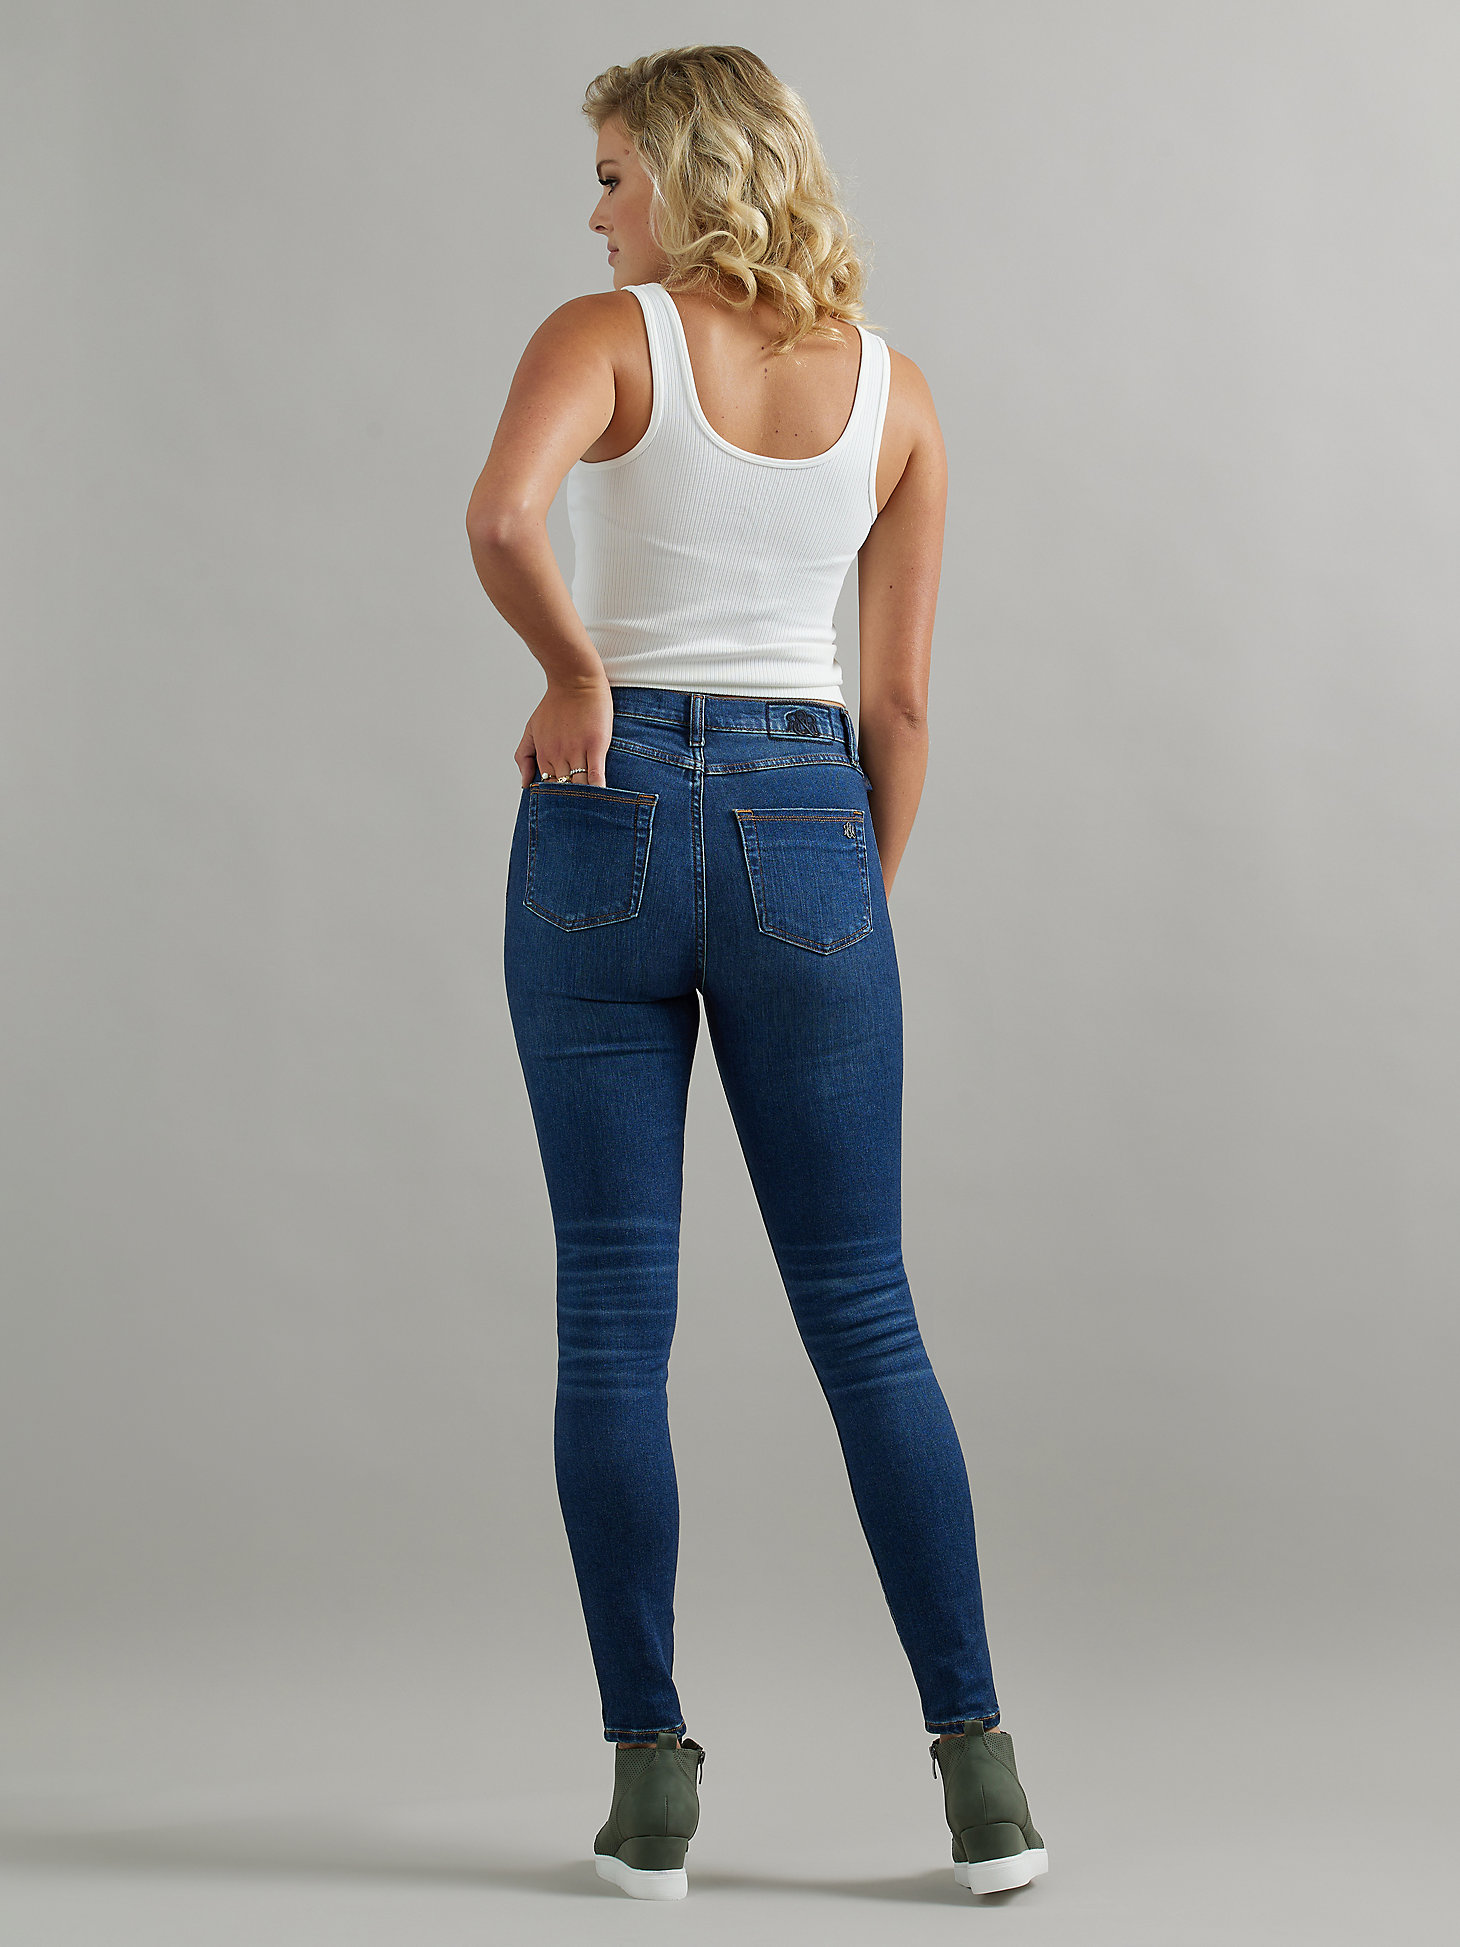 Women's High Roller High Rise Skinny Jean in In It Win It alternative view 1